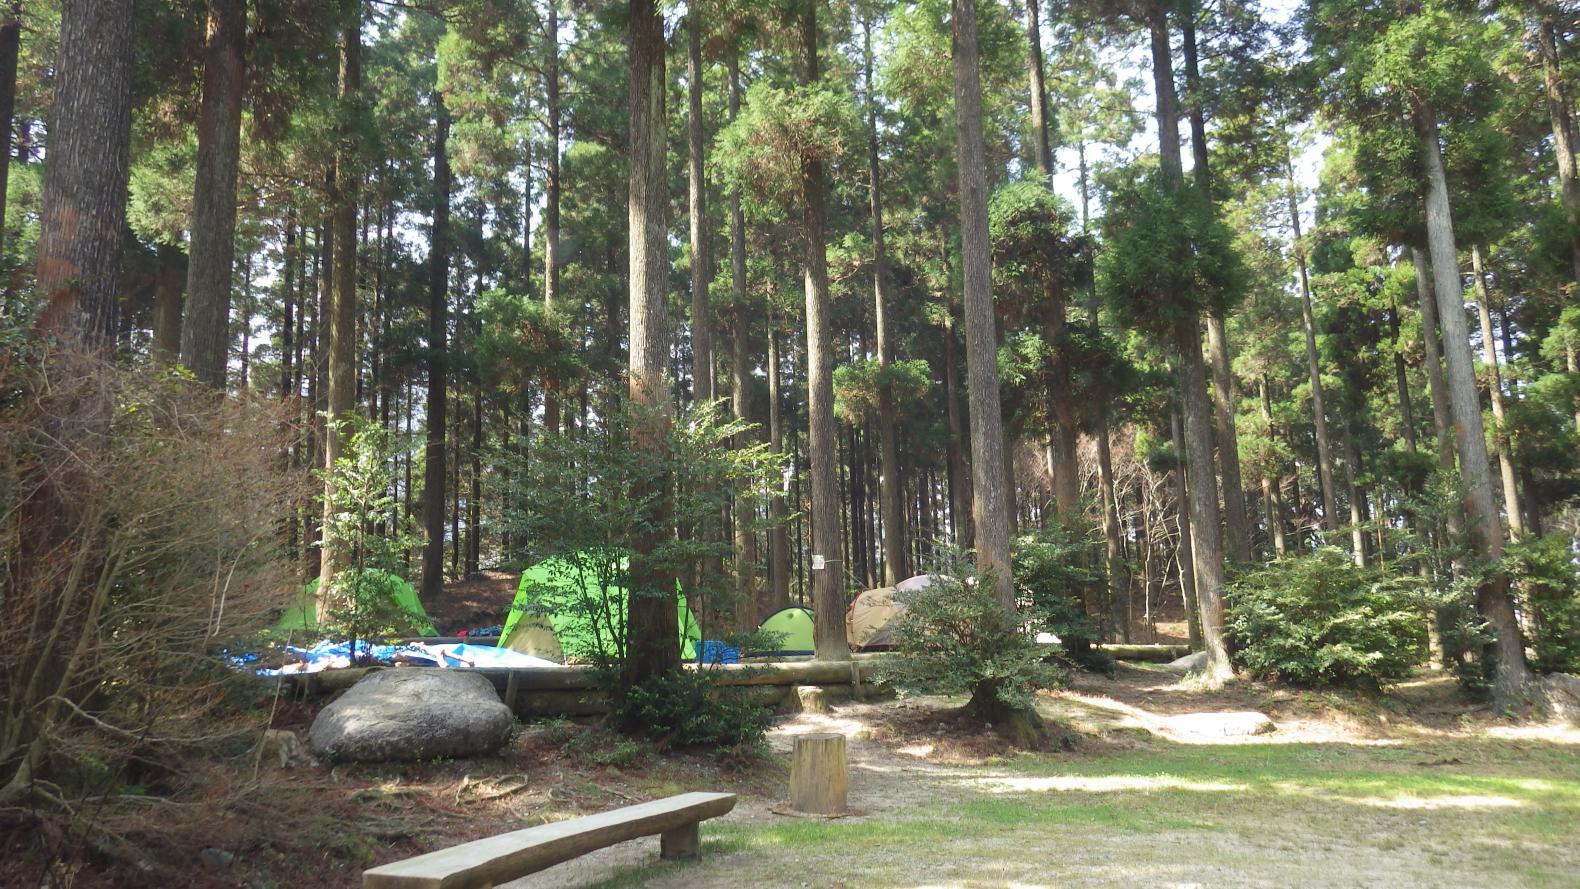 真名子木の香ランドキャンプ場